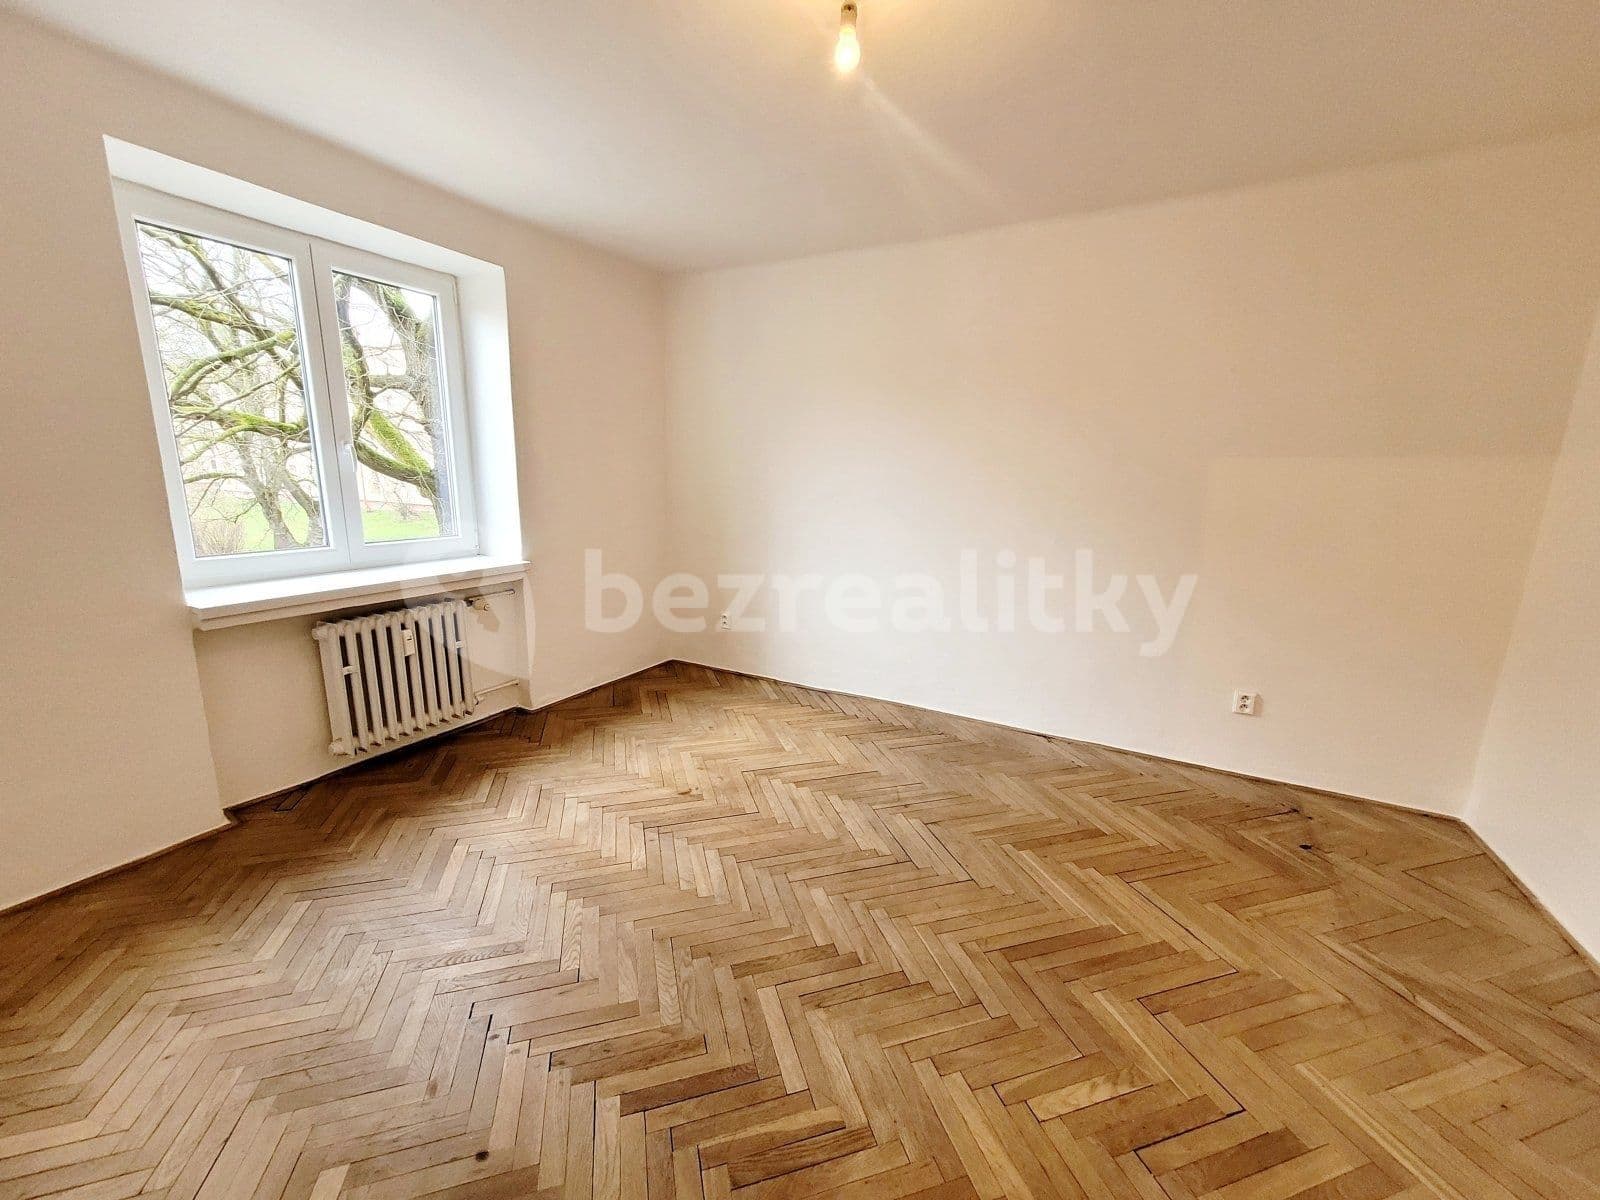 2 bedroom flat to rent, 56 m², Anglická, Havířov, Moravskoslezský Region